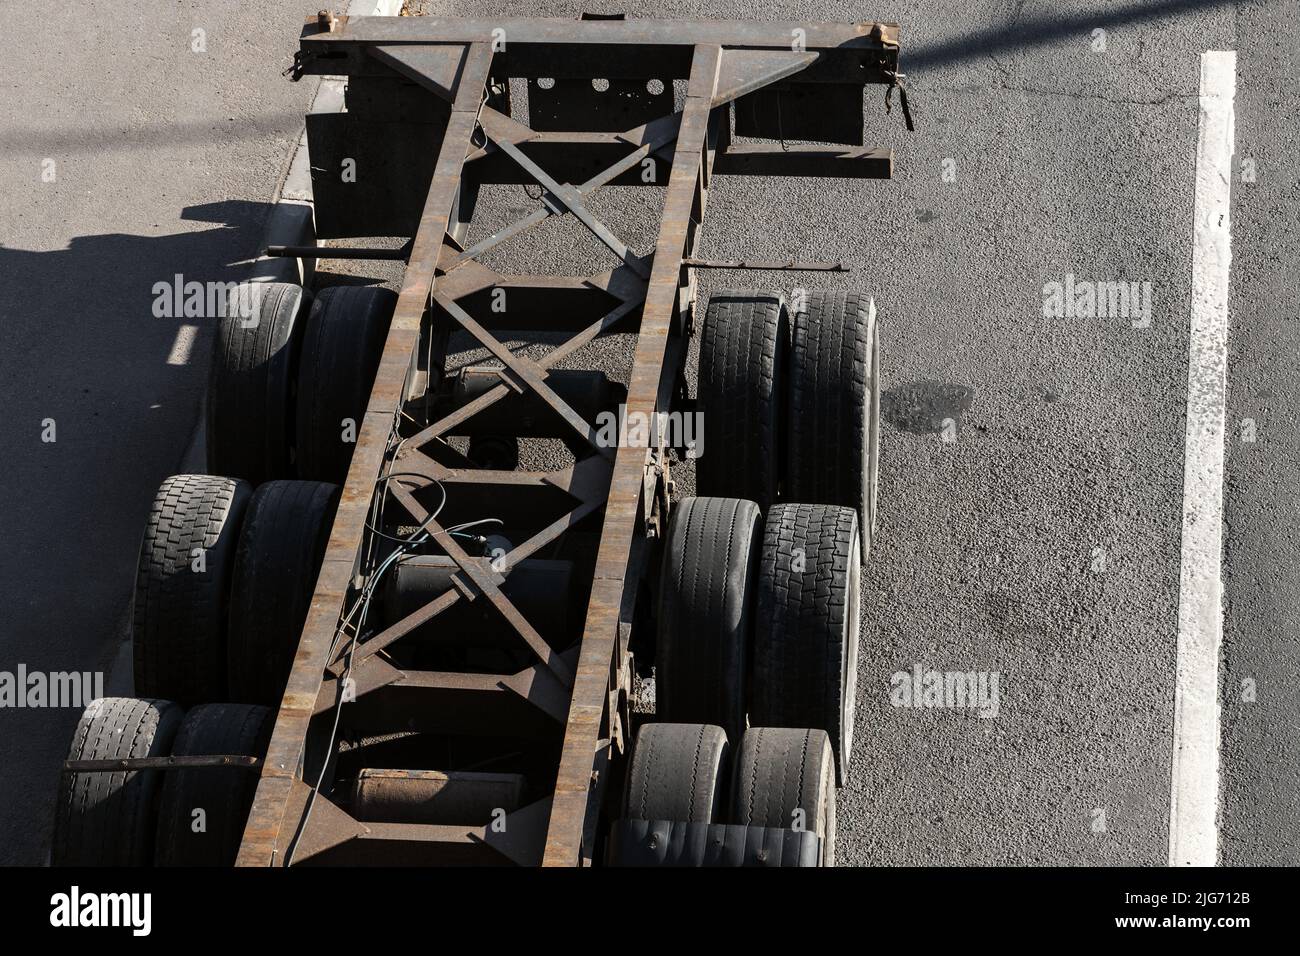 Un camion vide stationné sur une route asphaltée urbaine, vue aérienne Banque D'Images